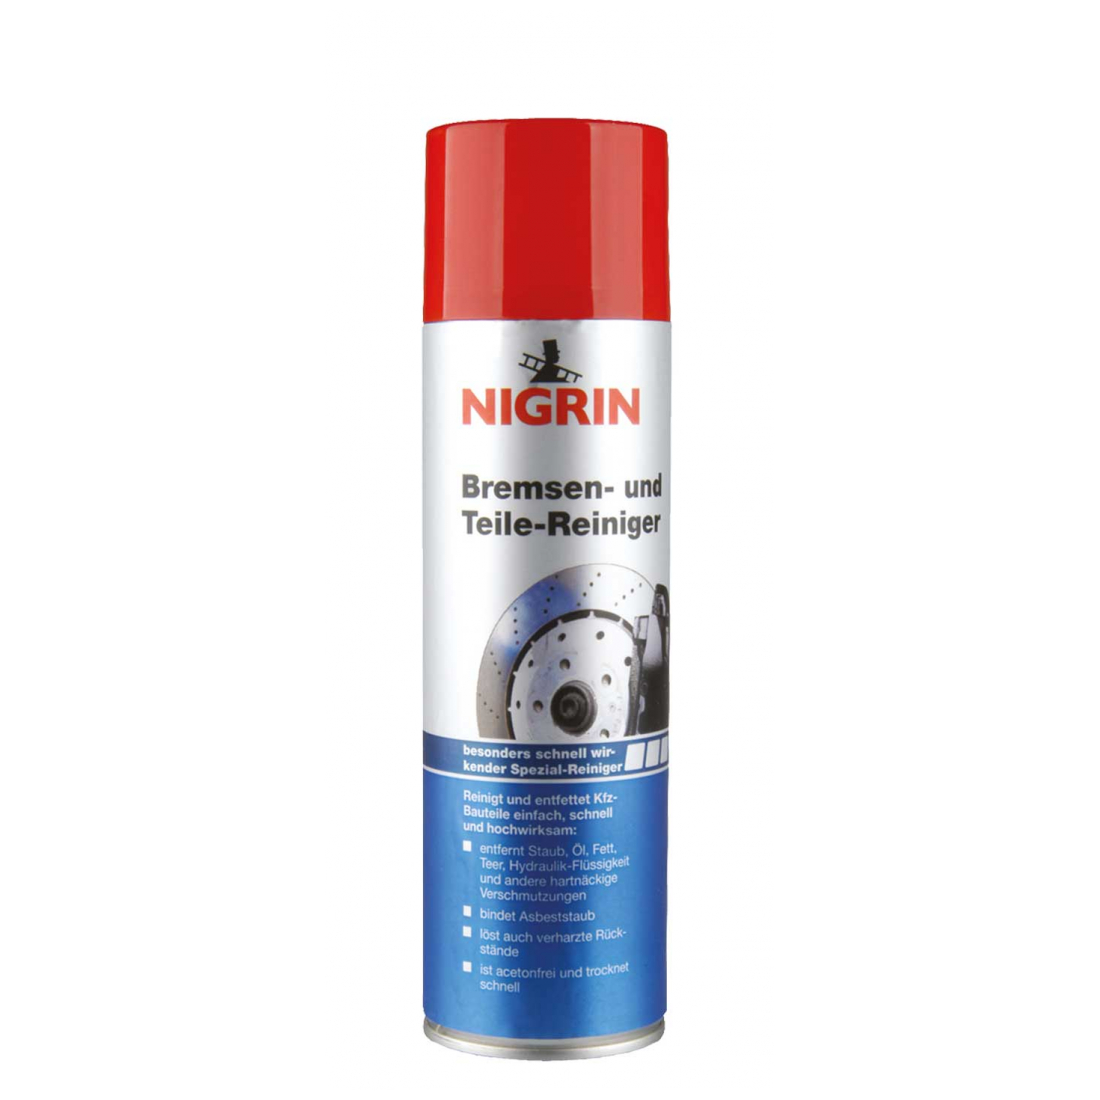 NIGRIN Bremsen- und Teile-Reiniger 500 ml 74057